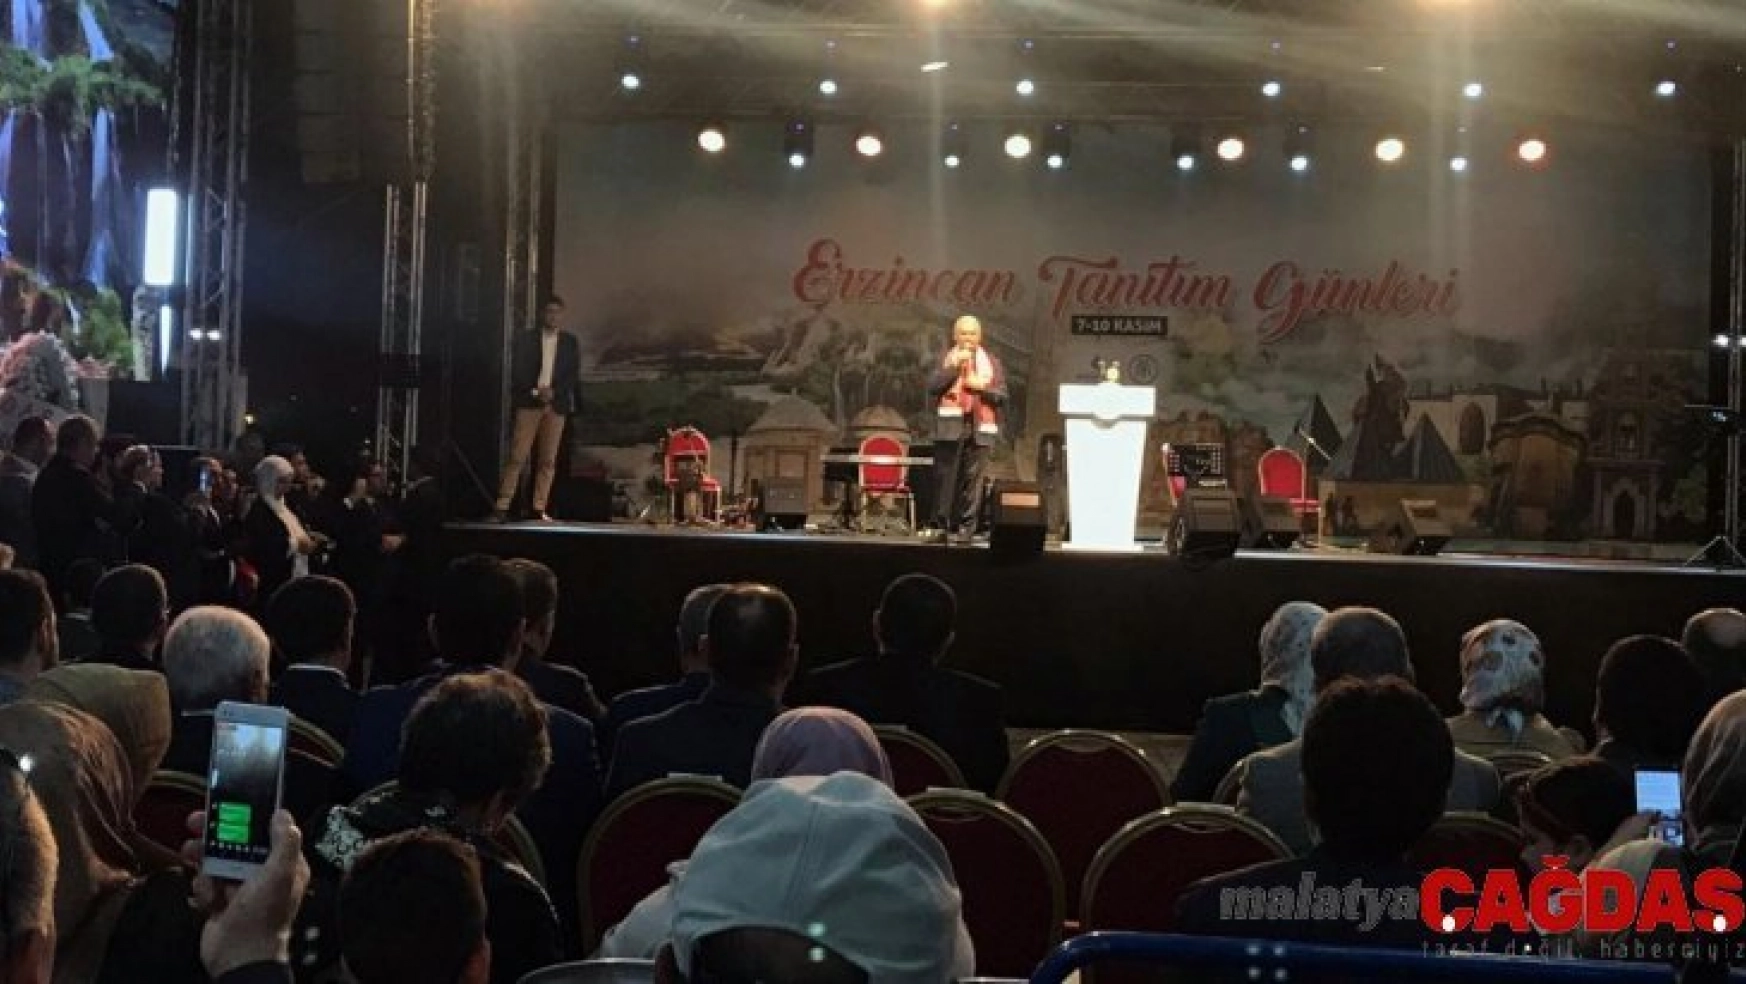 AK Parti İzmir milletvekili Binali Yıldırım Erzincan Tanıtım Günleri'nde